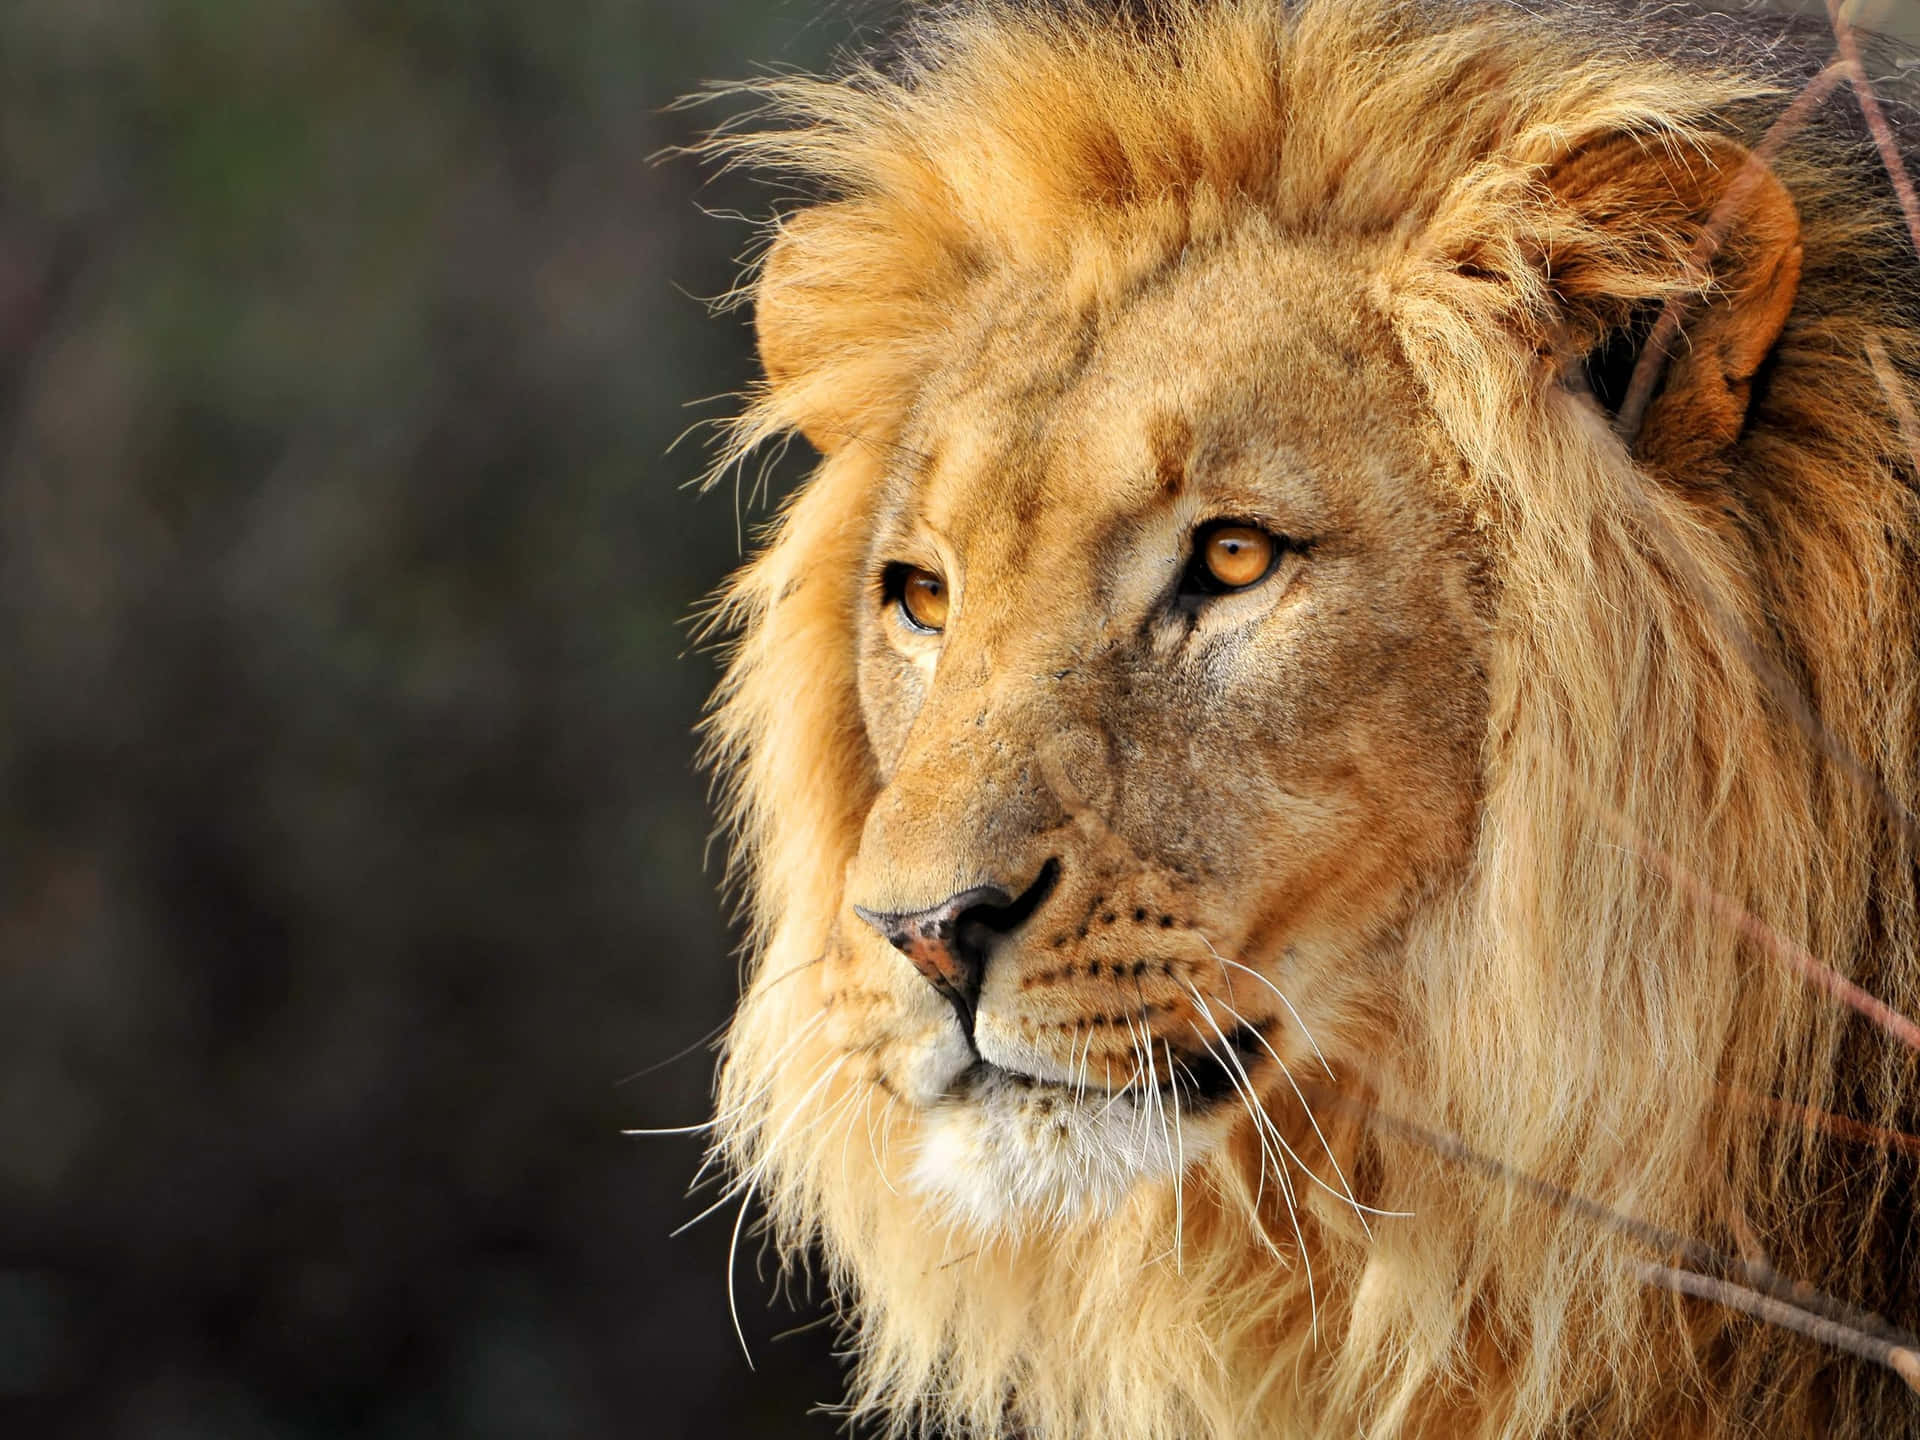 Image  A majestic lion overlooking vast grasslands